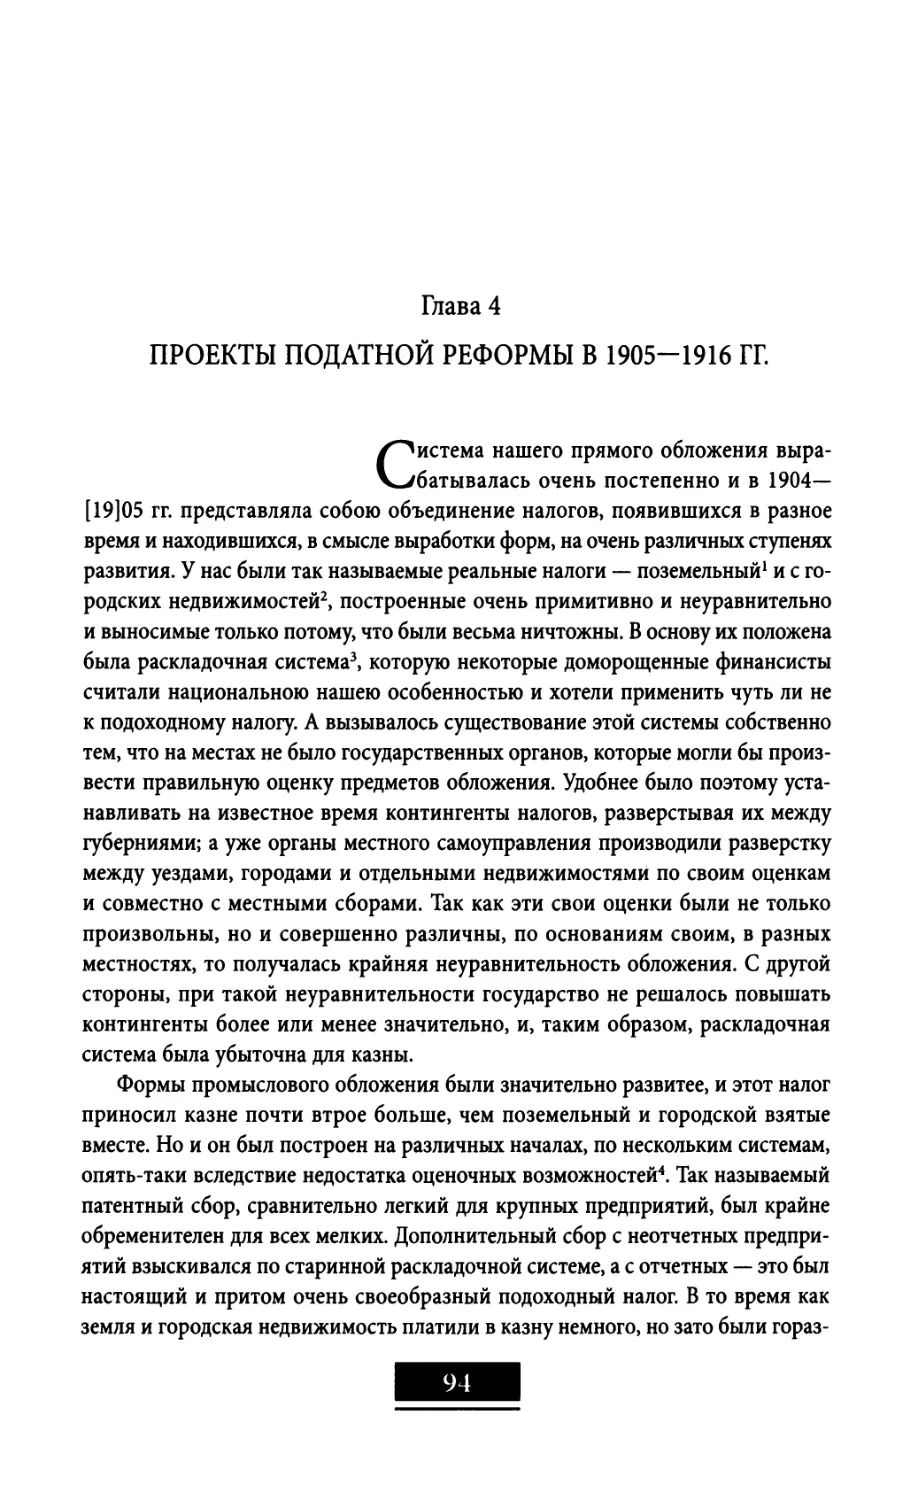 Глава 4. Проекты податной реформы в 1905—1916 гг